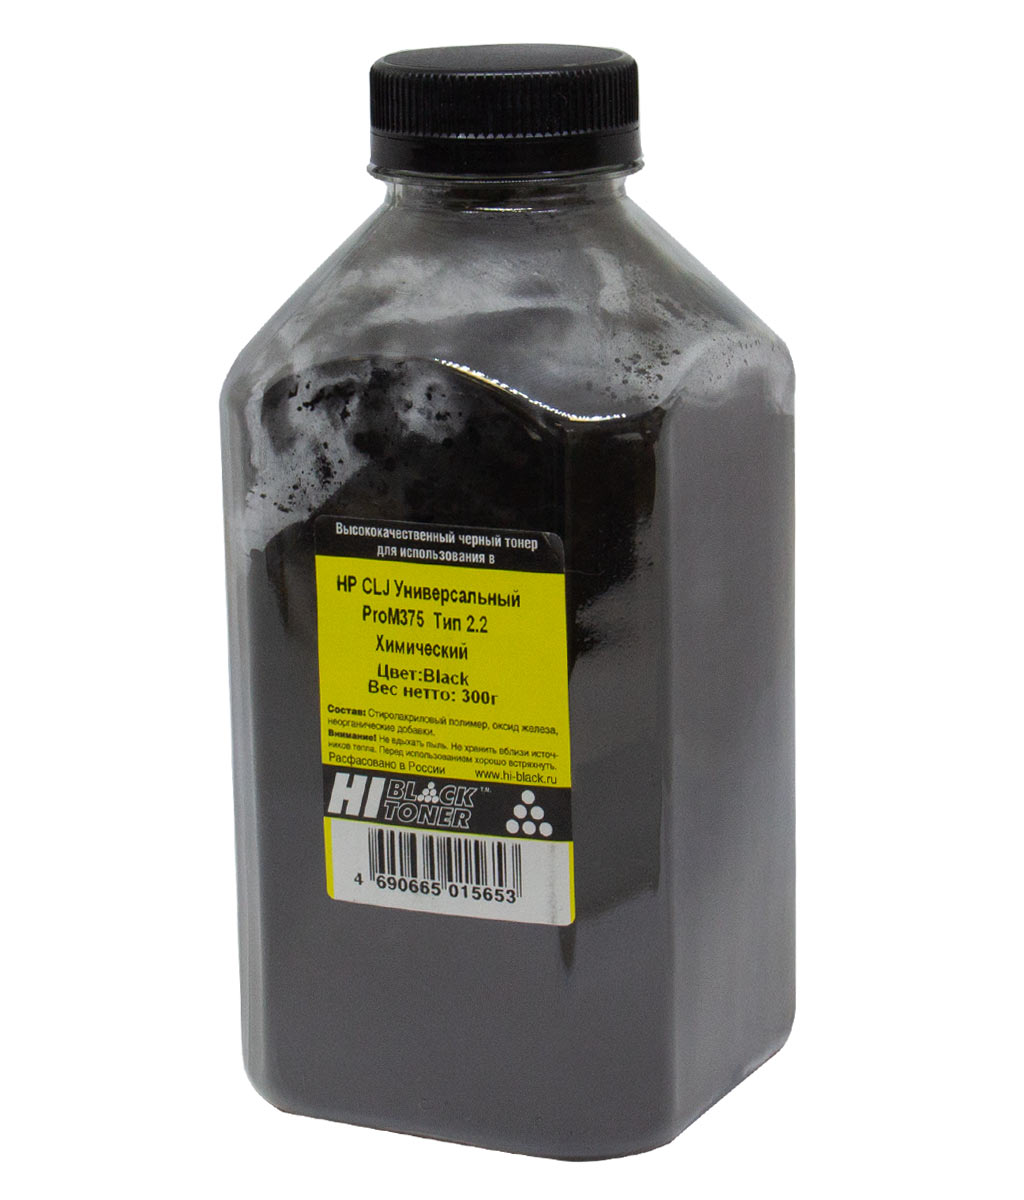 Тонер Hi-Black Универсальный для HP CLJ ProM375, Химический, Тип 2.2, Bk, 300 г, банка